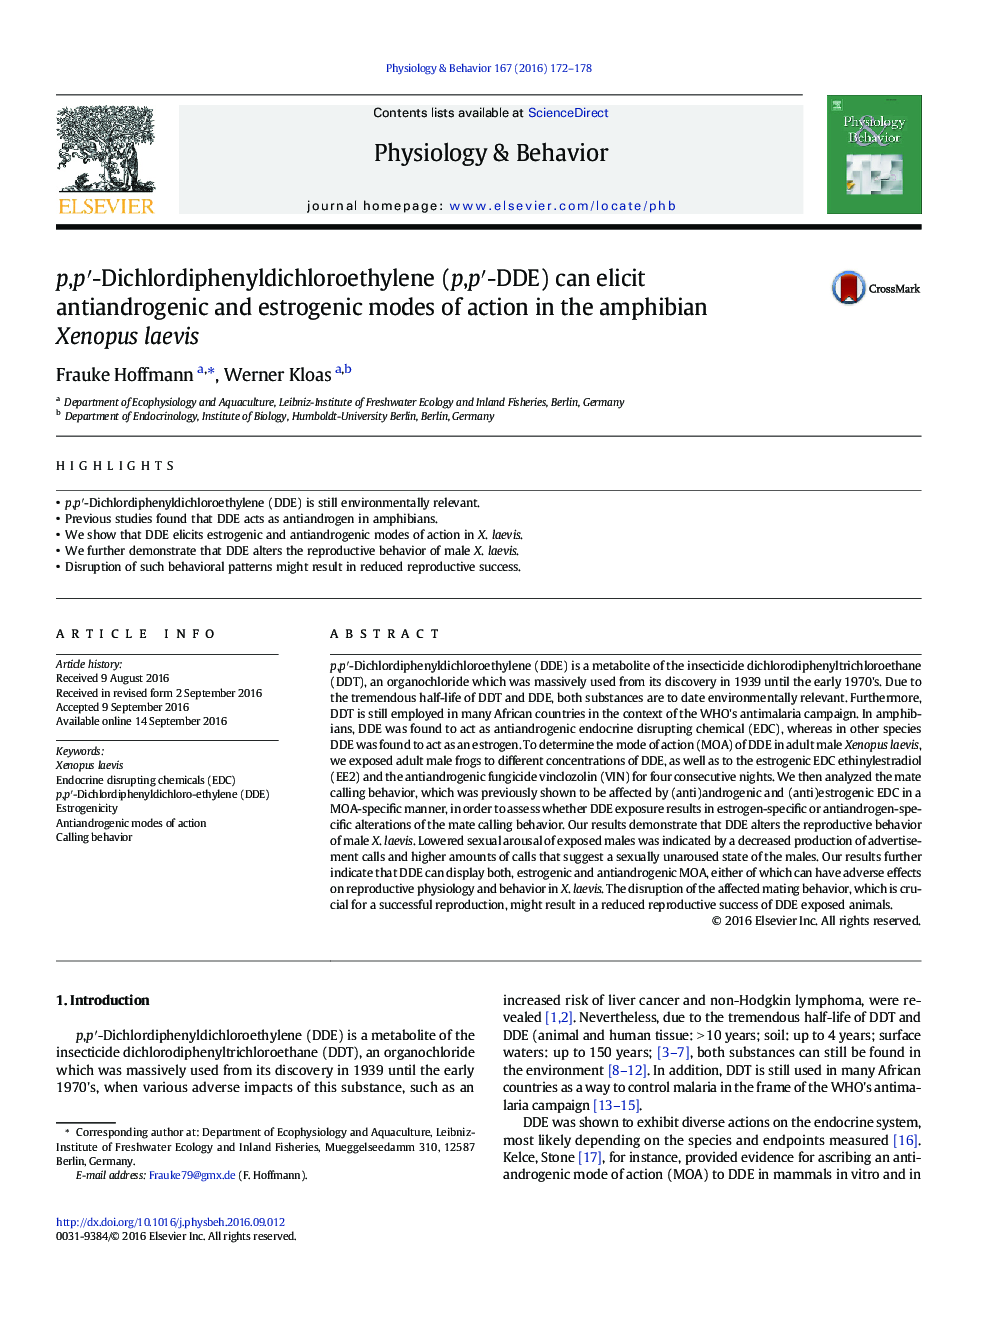 p,pâ²-Dichlordiphenyldichloroethylene (p,pâ²-DDE) can elicit antiandrogenic and estrogenic modes of action in the amphibian Xenopus laevis